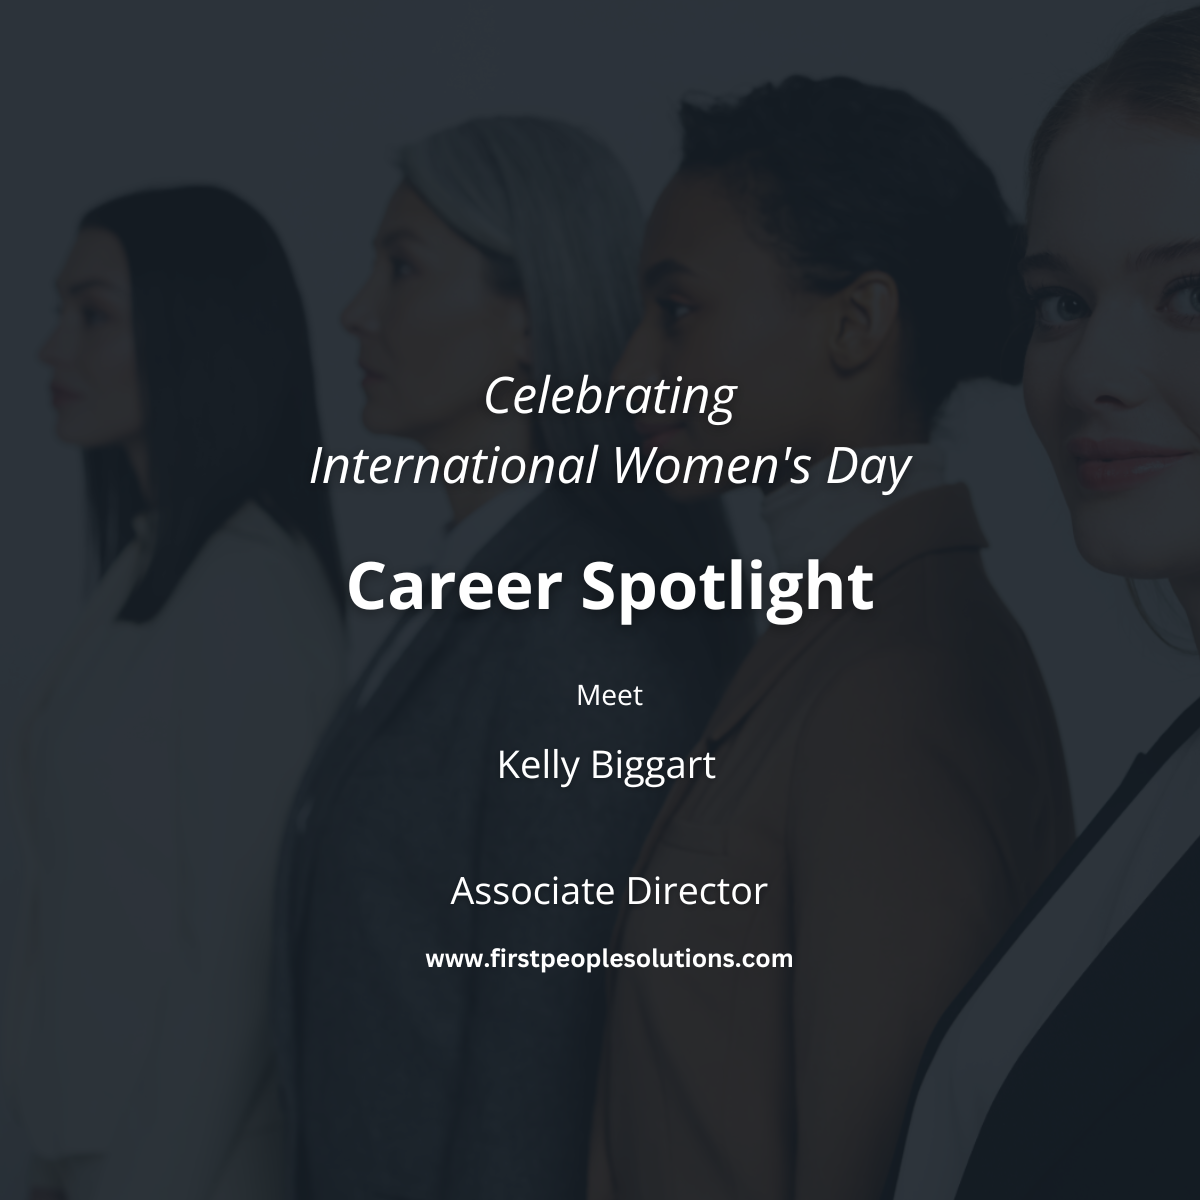 Career Spotlight Celebrating International Women's Day